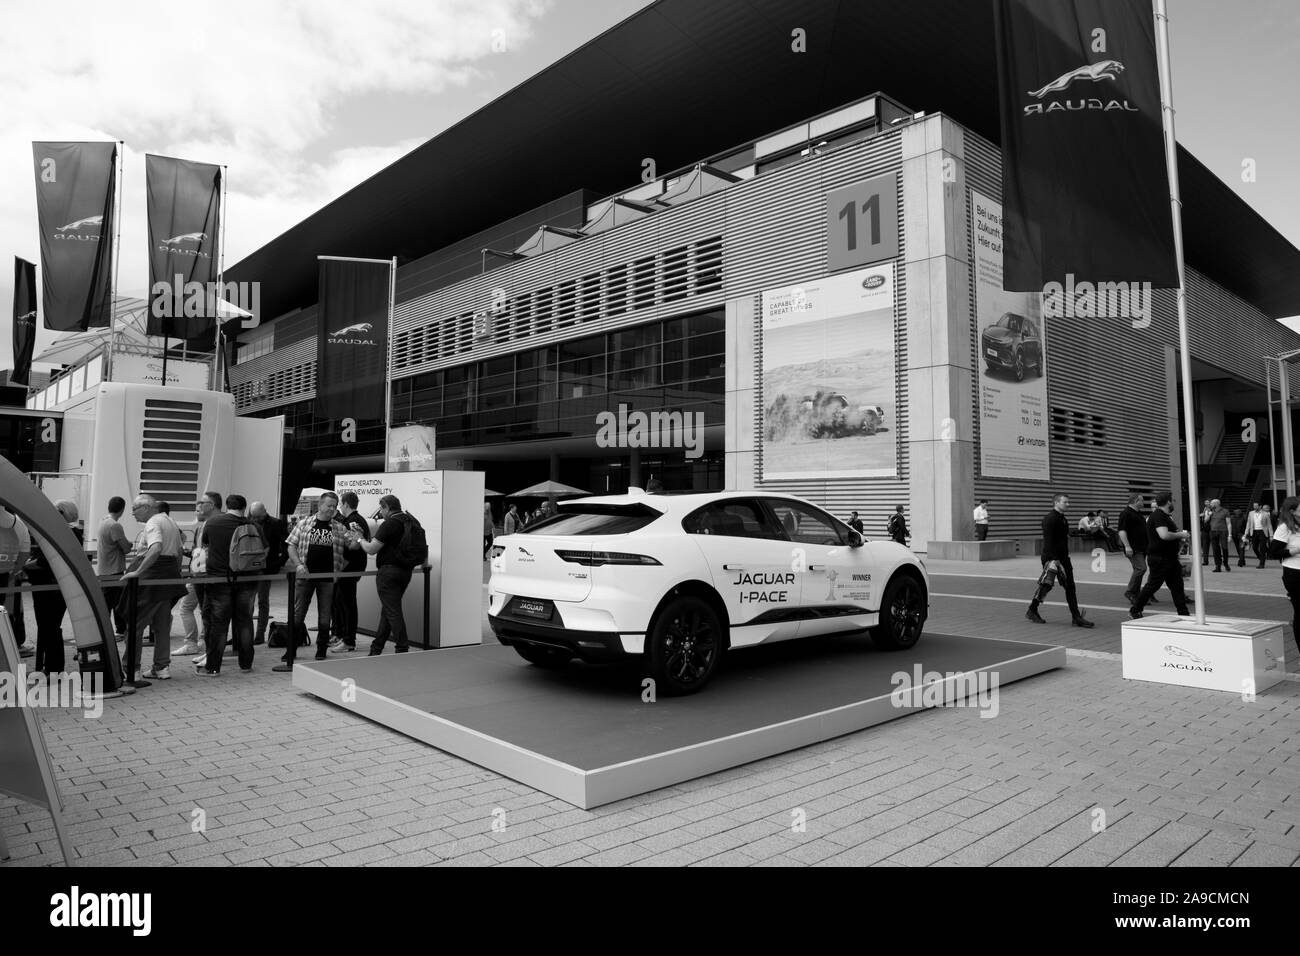 Impressioni della fiera internazionale di automobili in frankfurt am main Germania nel settembre 2019 Foto Stock